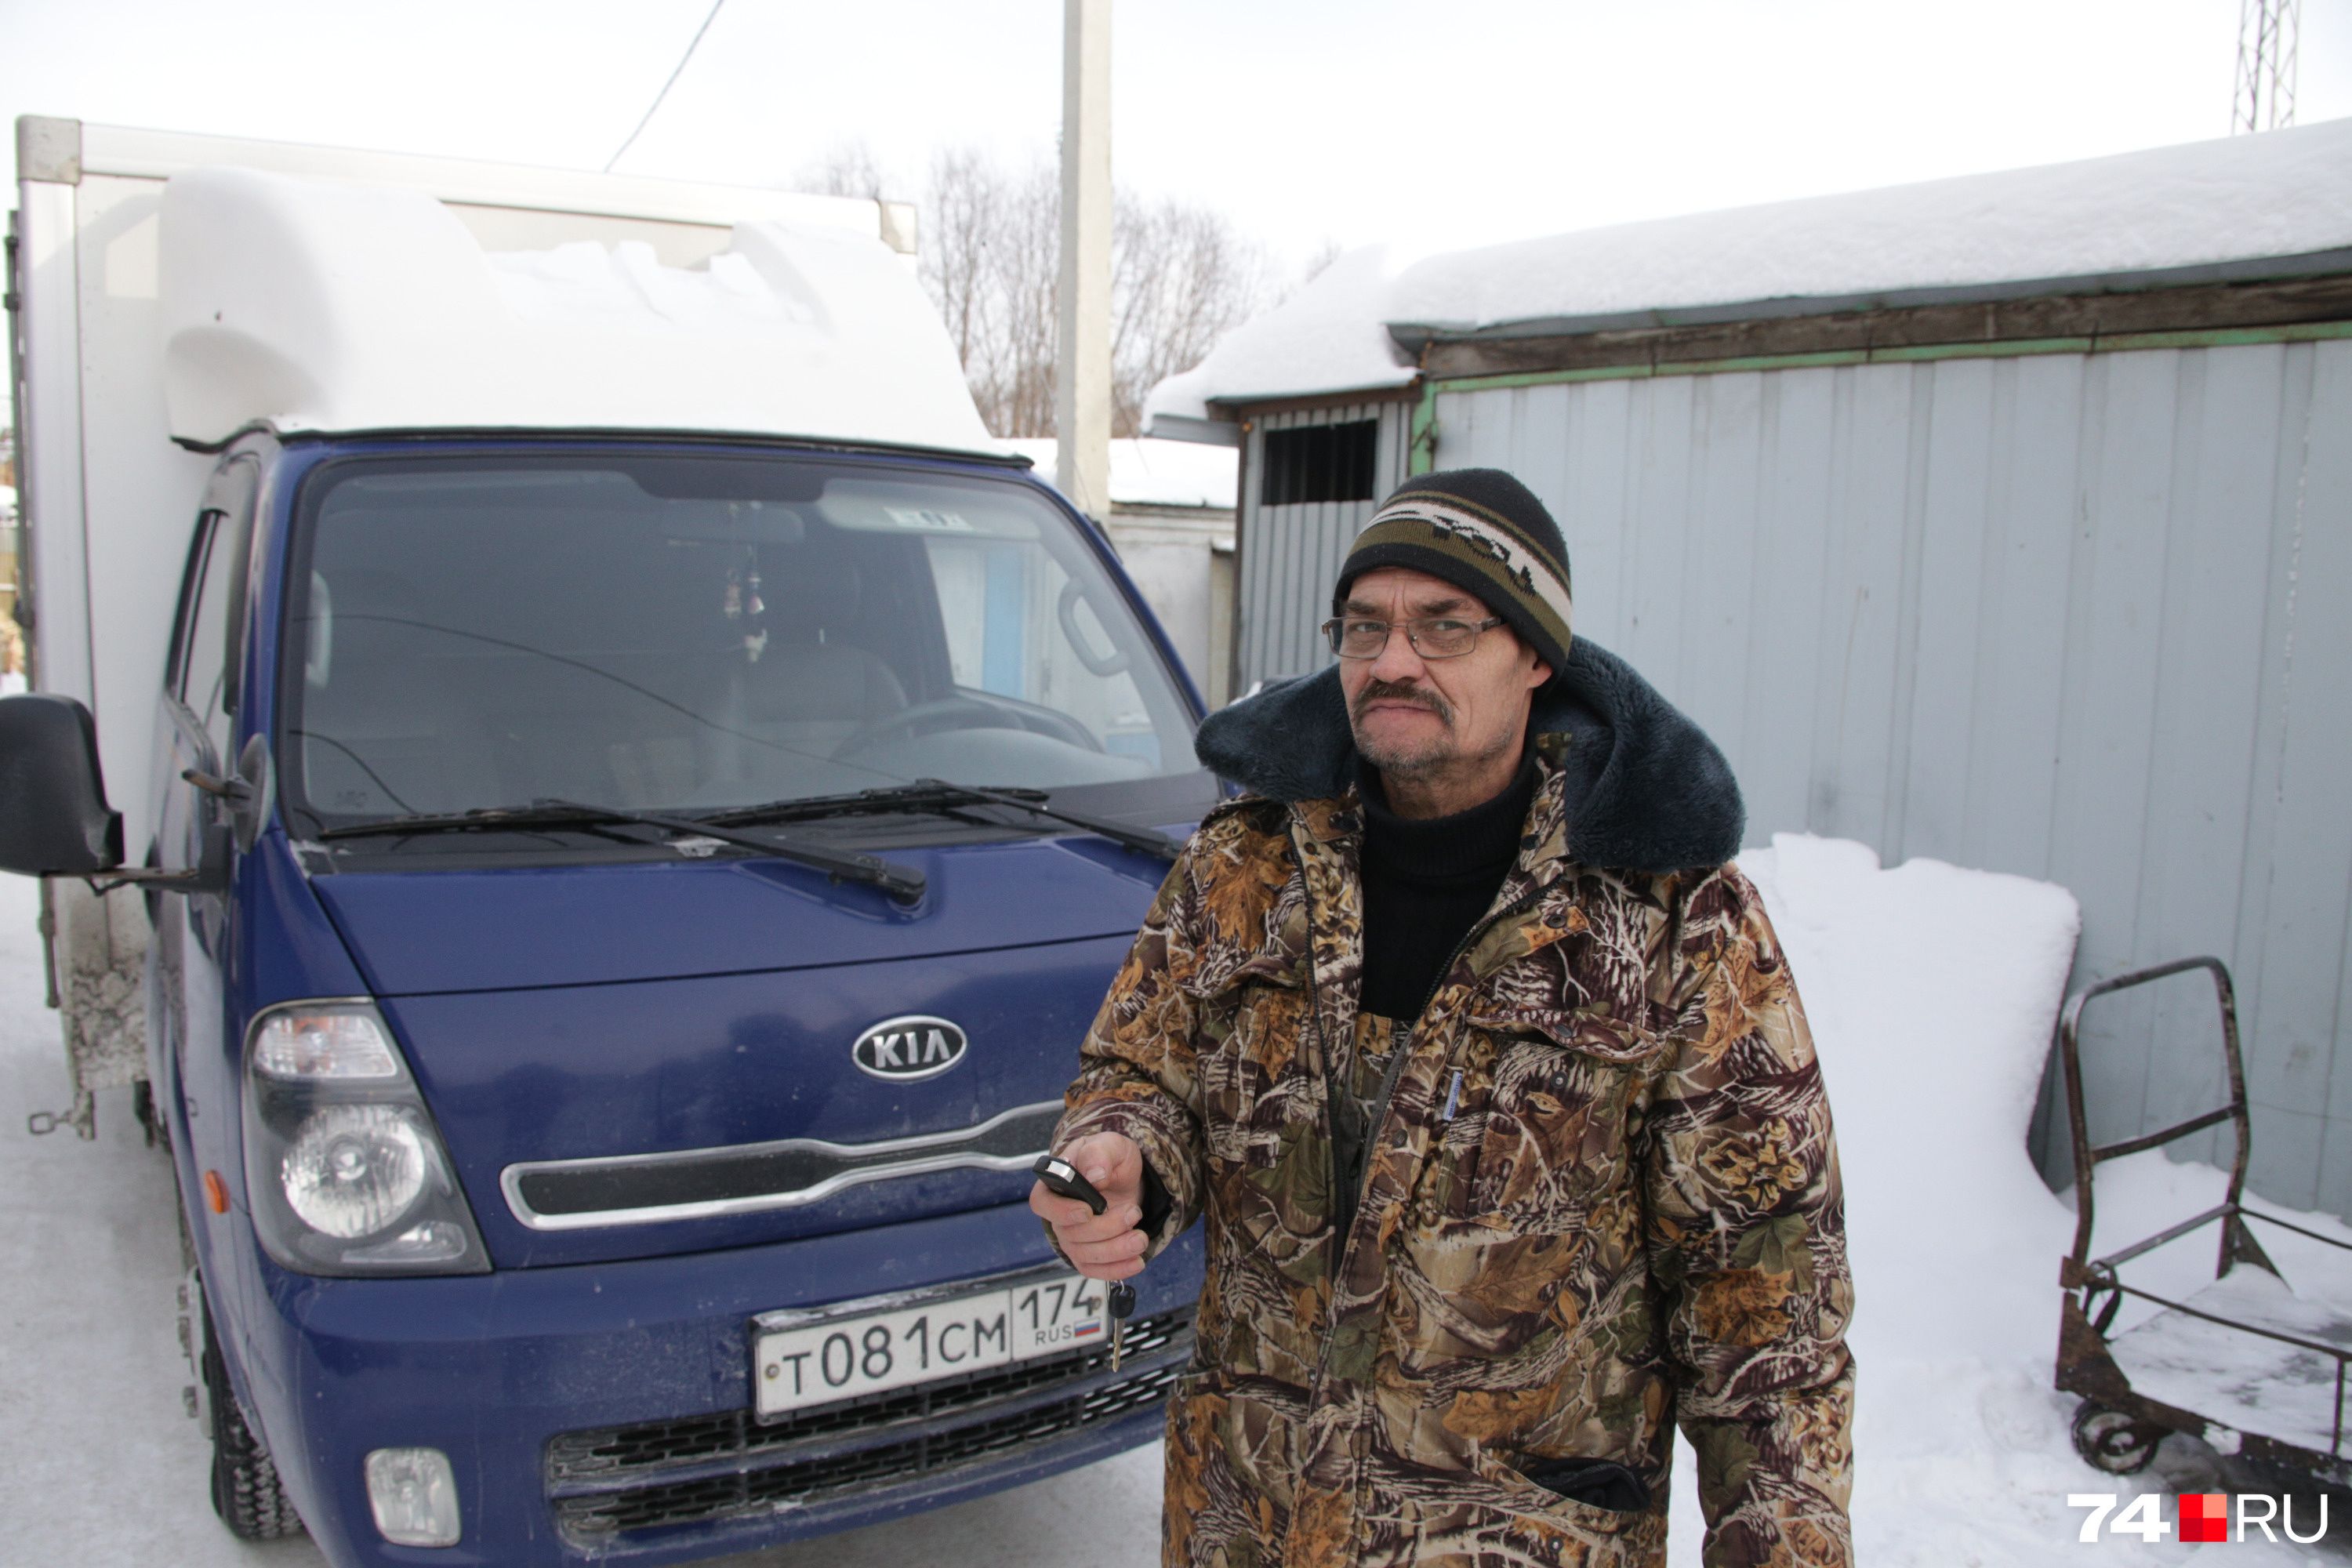 Главный совет от водителя и экспедитора Олега Викторовича — не стоять на месте, тогда и мороз не страшен